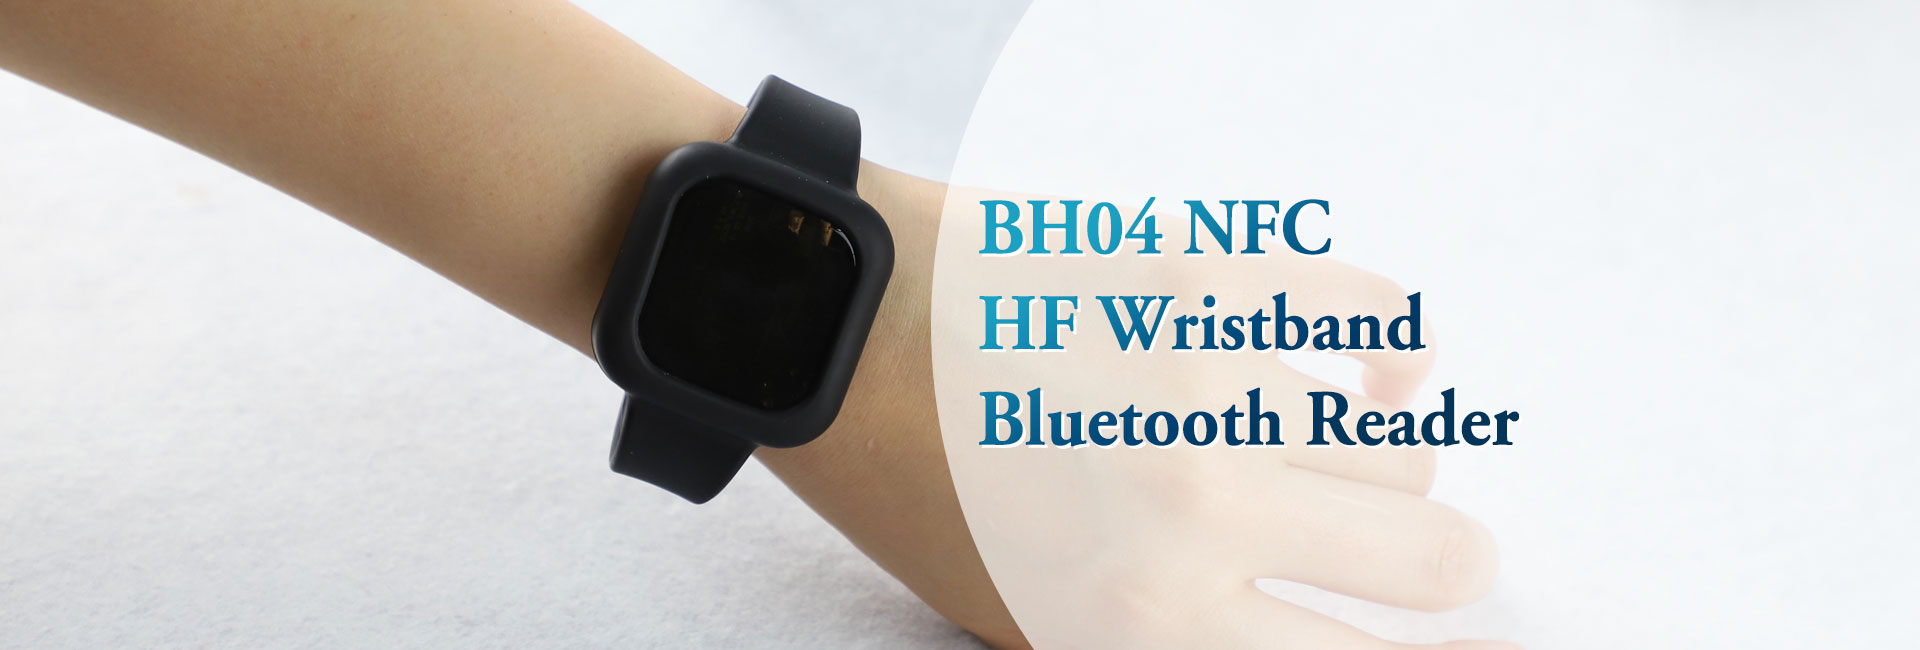 BH04 NFC HF腕带蓝牙读写器